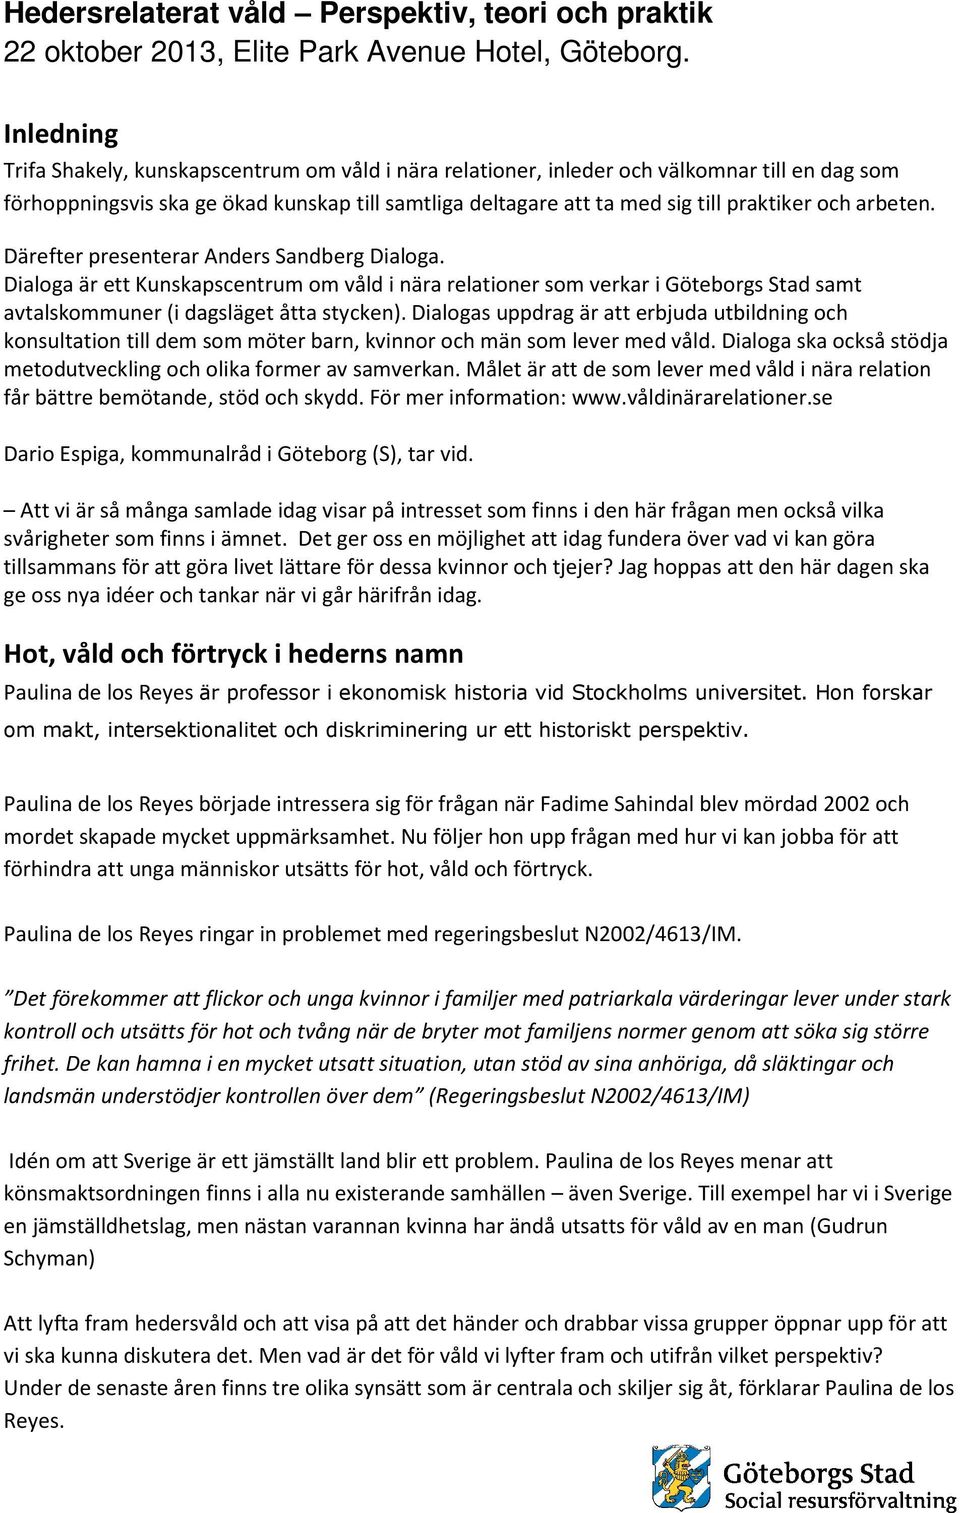 arbeten. Därefter presenterar Anders Sandberg Dialoga. Dialoga är ett Kunskapscentrum om våld i nära relationer som verkar i Göteborgs Stad samt avtalskommuner (i dagsläget åtta stycken).